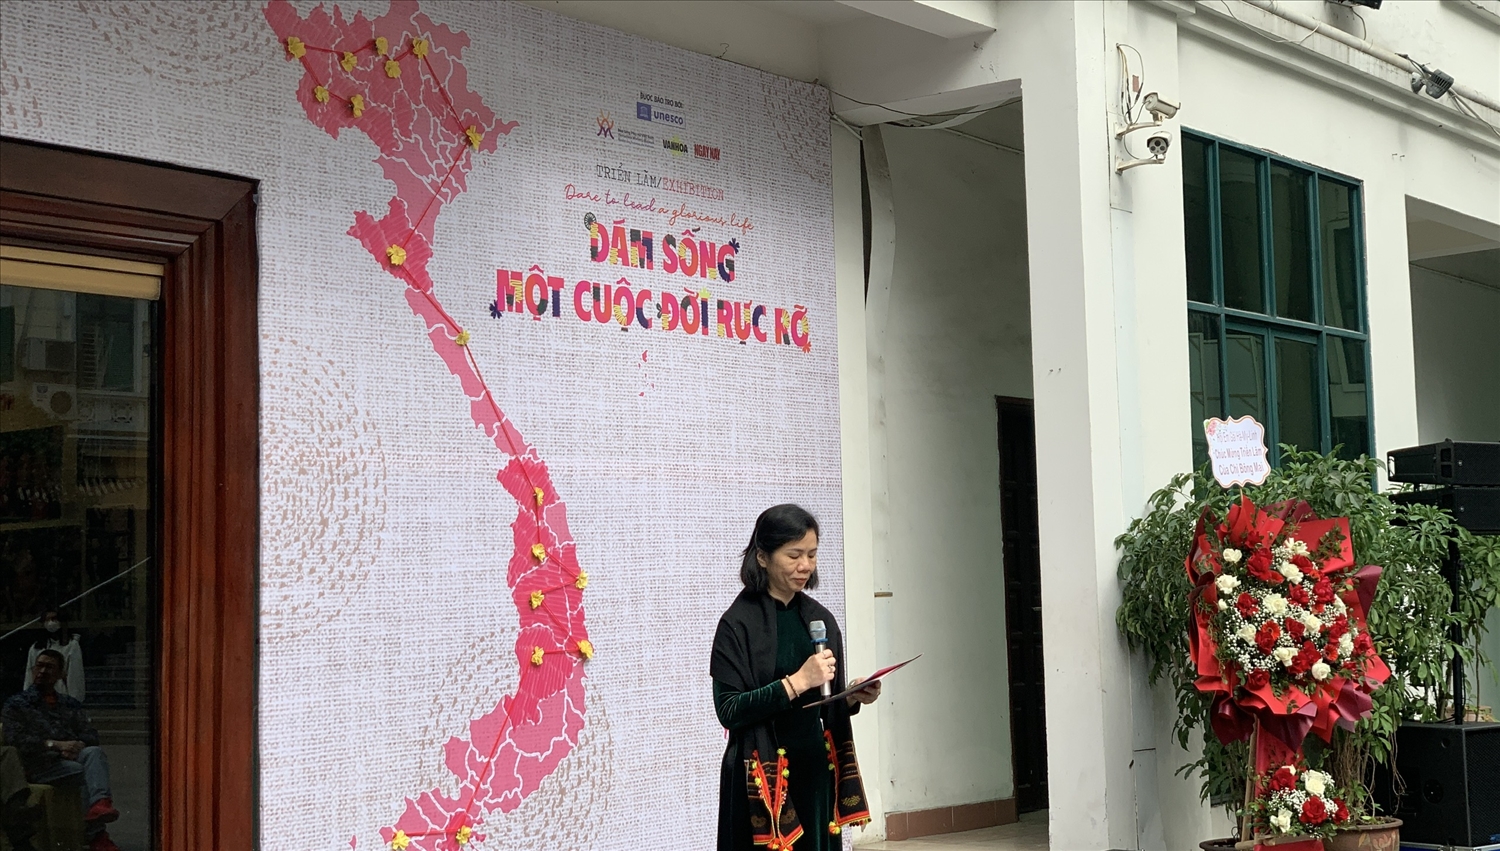 Bà Nguyễn Thị Minh Hương, Phó chủ tịch Hội liên hiệp Phụ nữ Việt Nam phát biểu tại buổi lễ